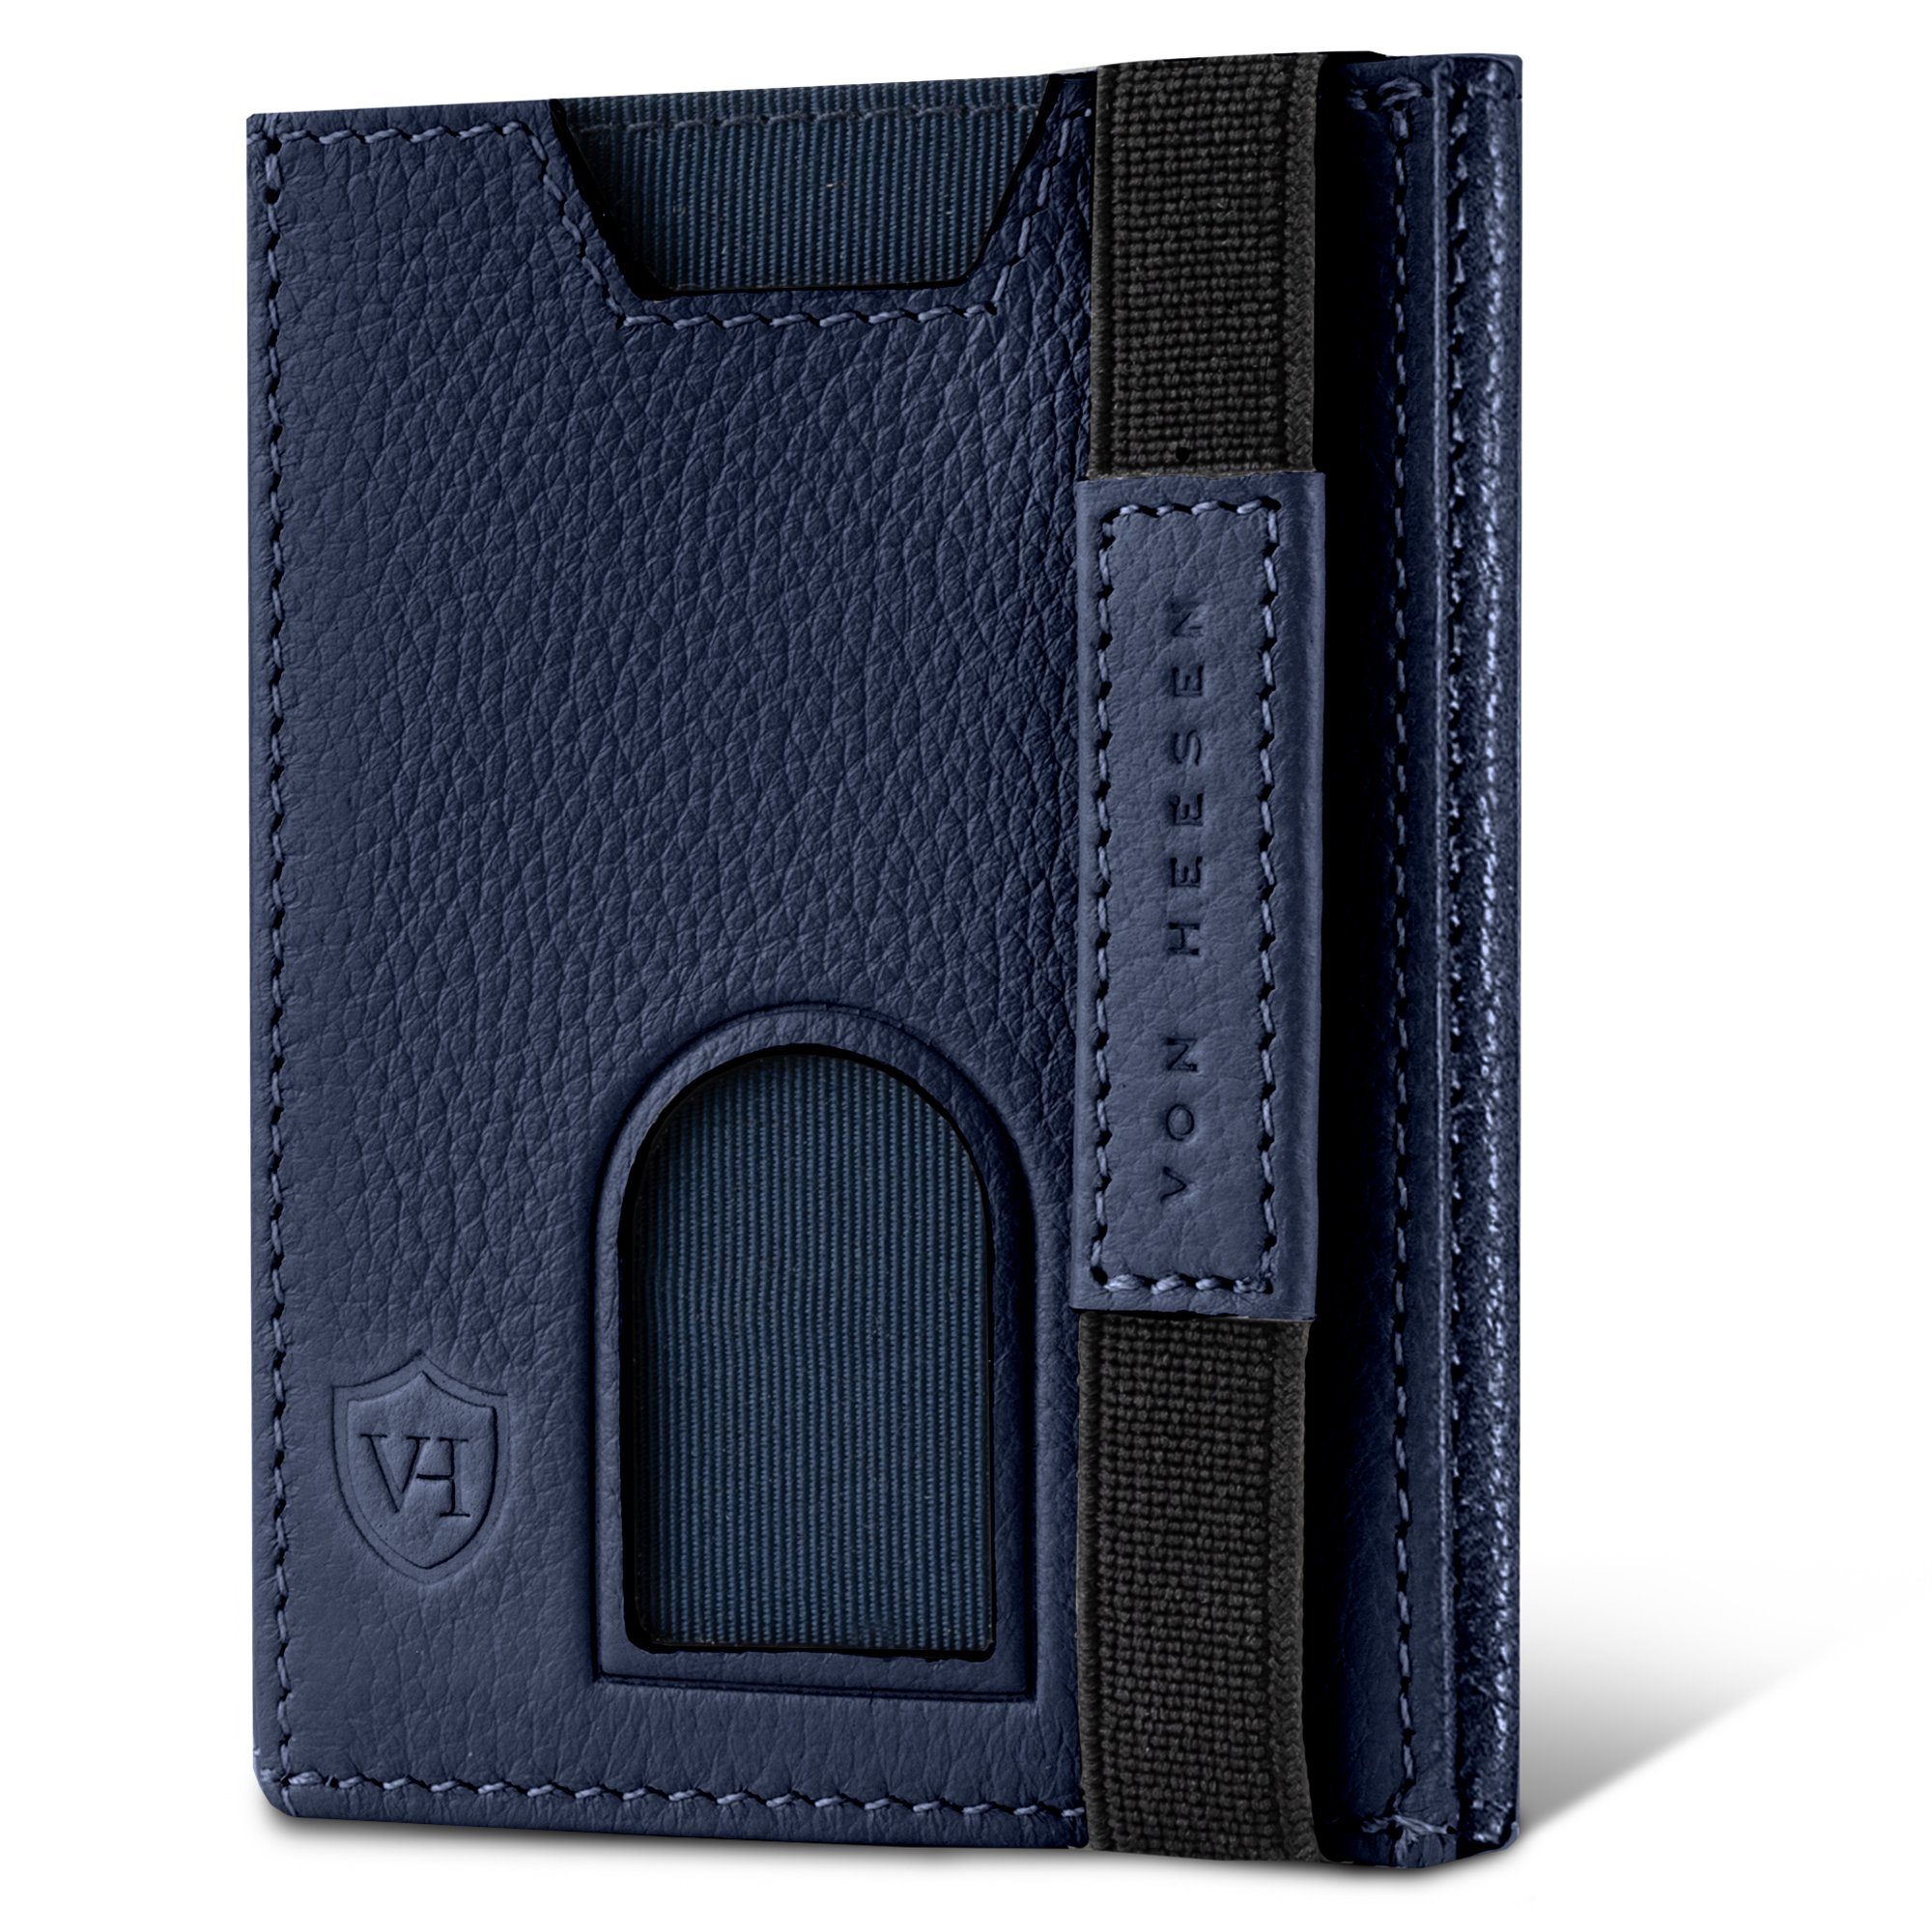 VON HEESEN Geldbörse Whizz Wallet mit 5 Kartenfächer & XL-Münzfach, Leder Slim Wallet Geldbeutel Portemonnaie inkl. RFID-Schutz & Geschenkbox (braun) Blau